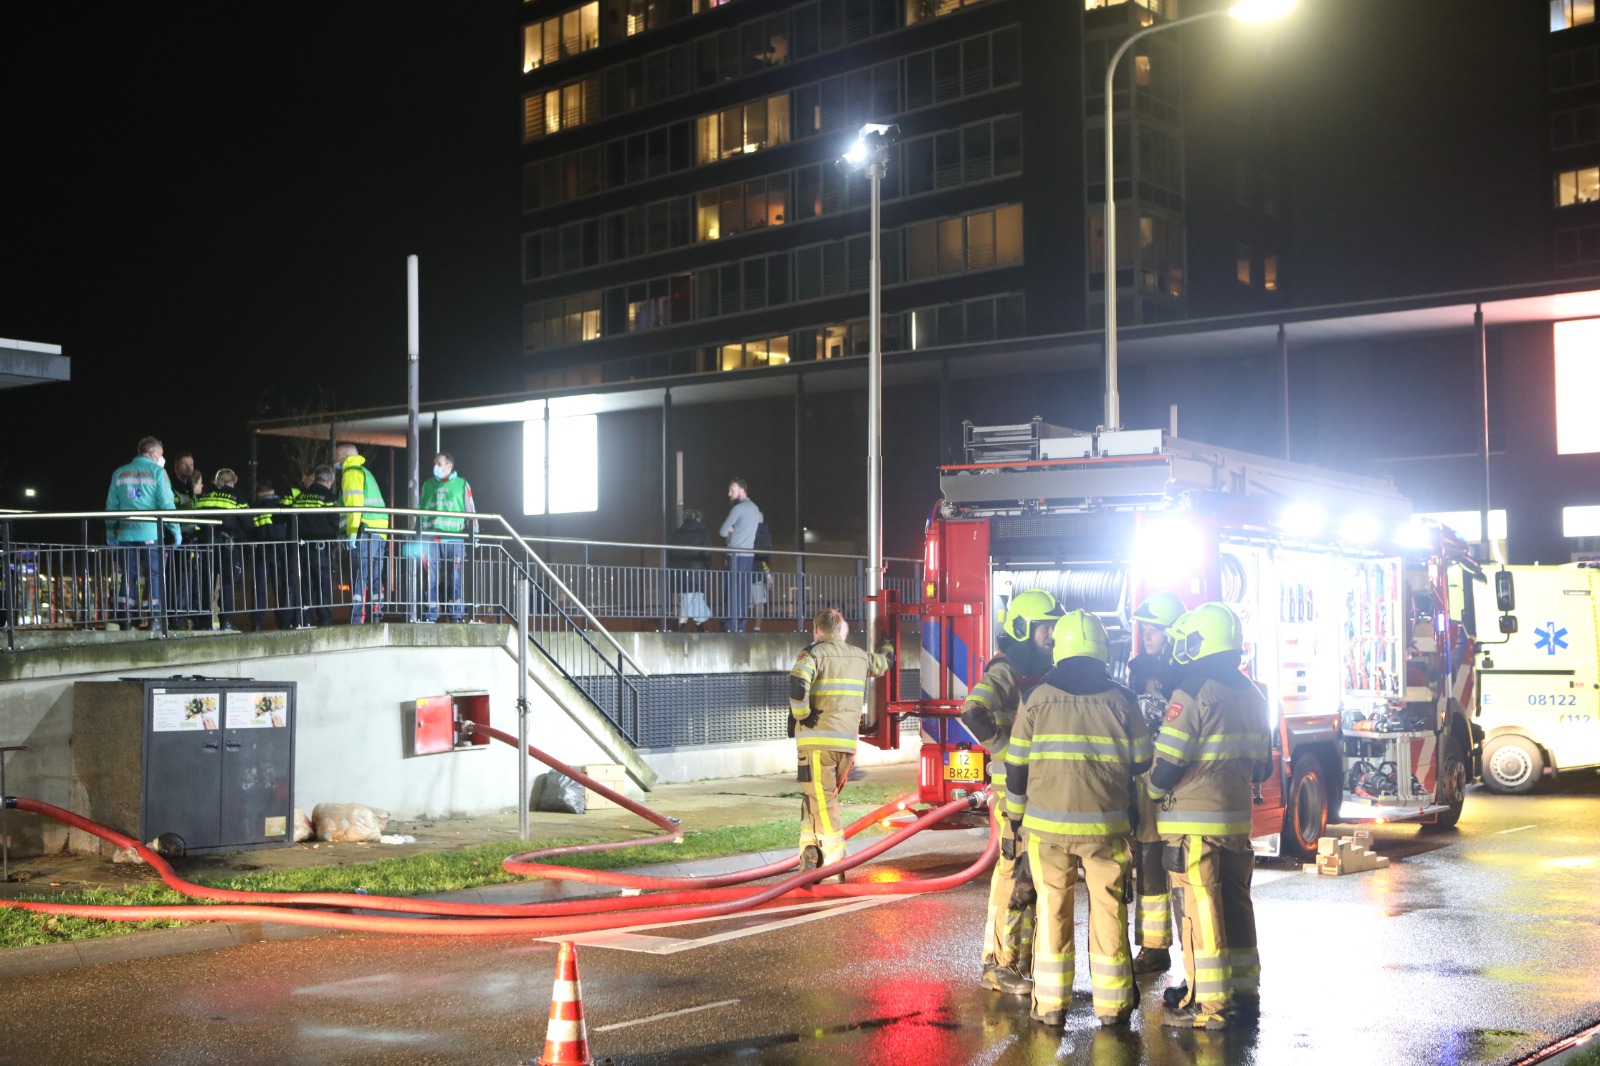 UPDATE: Twee mensen naar ziekenhuis door brand in flat Nijmegen